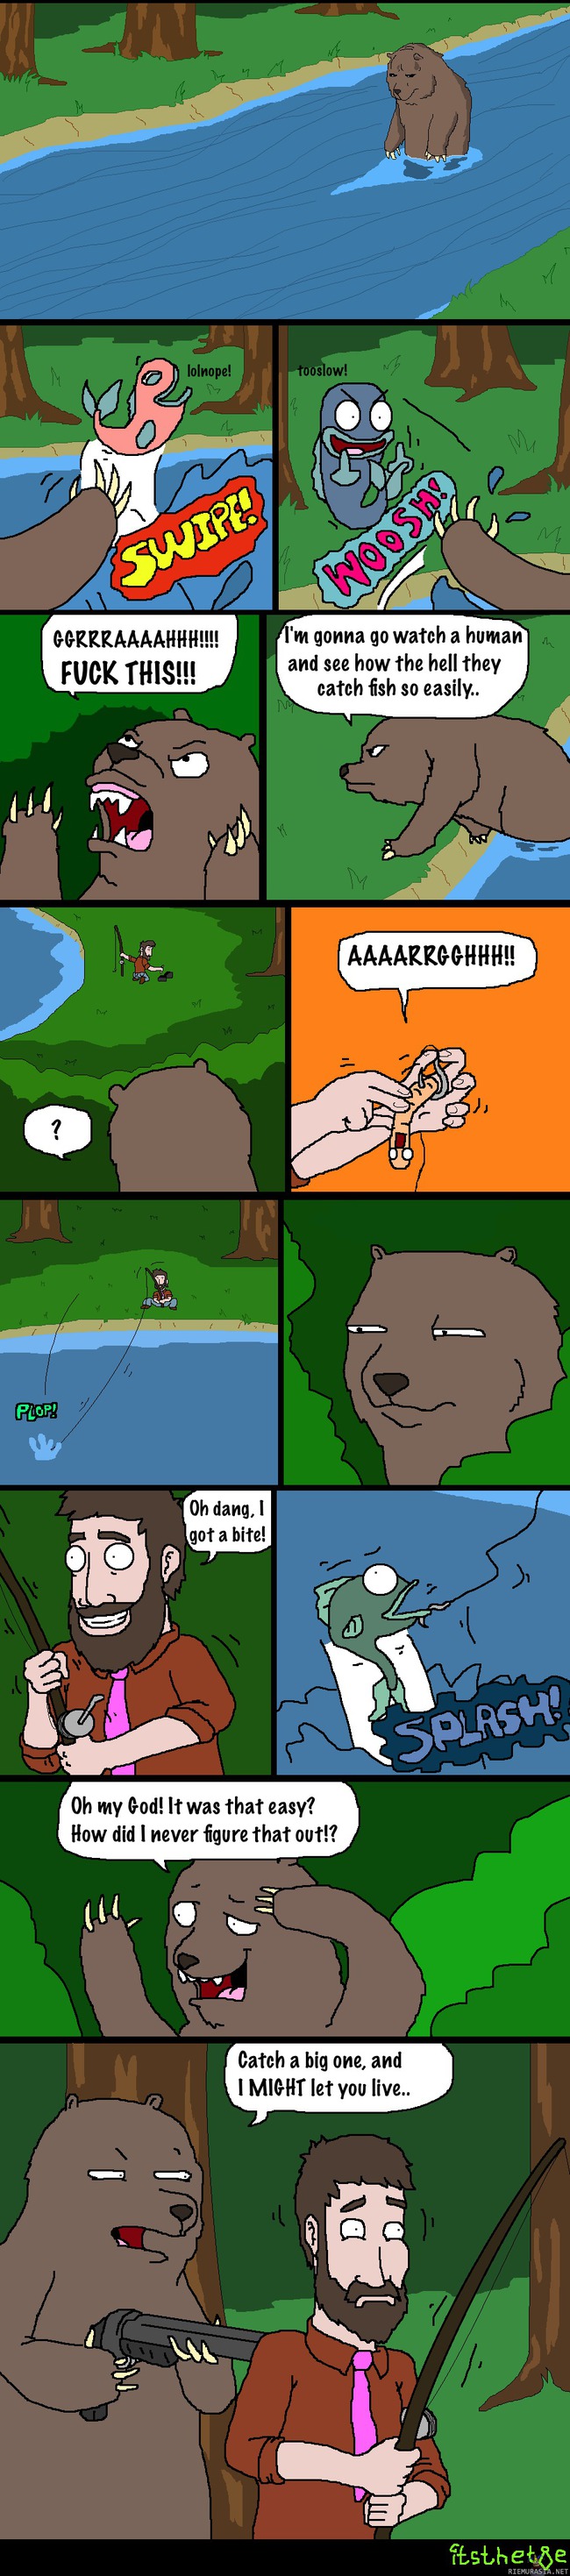 Karhu kalastaa